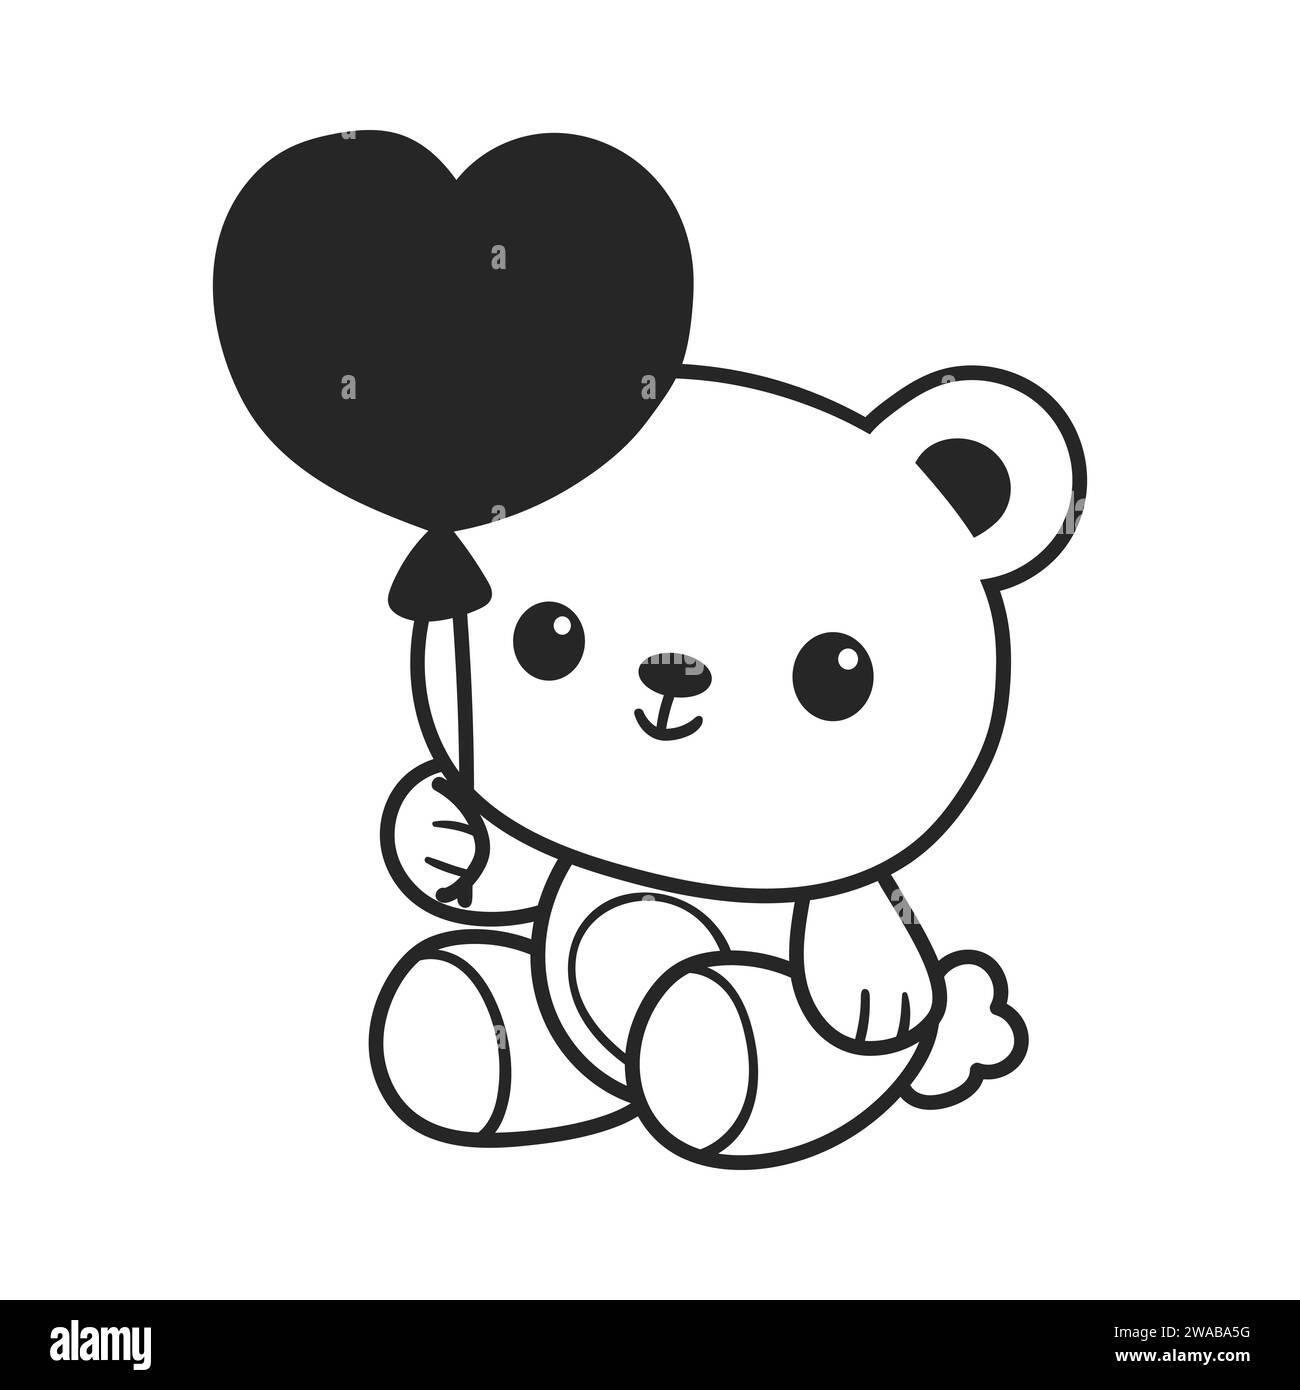 A cute  kawaii bear is holding a heart balloon. line art style vector illustration Stock Vector